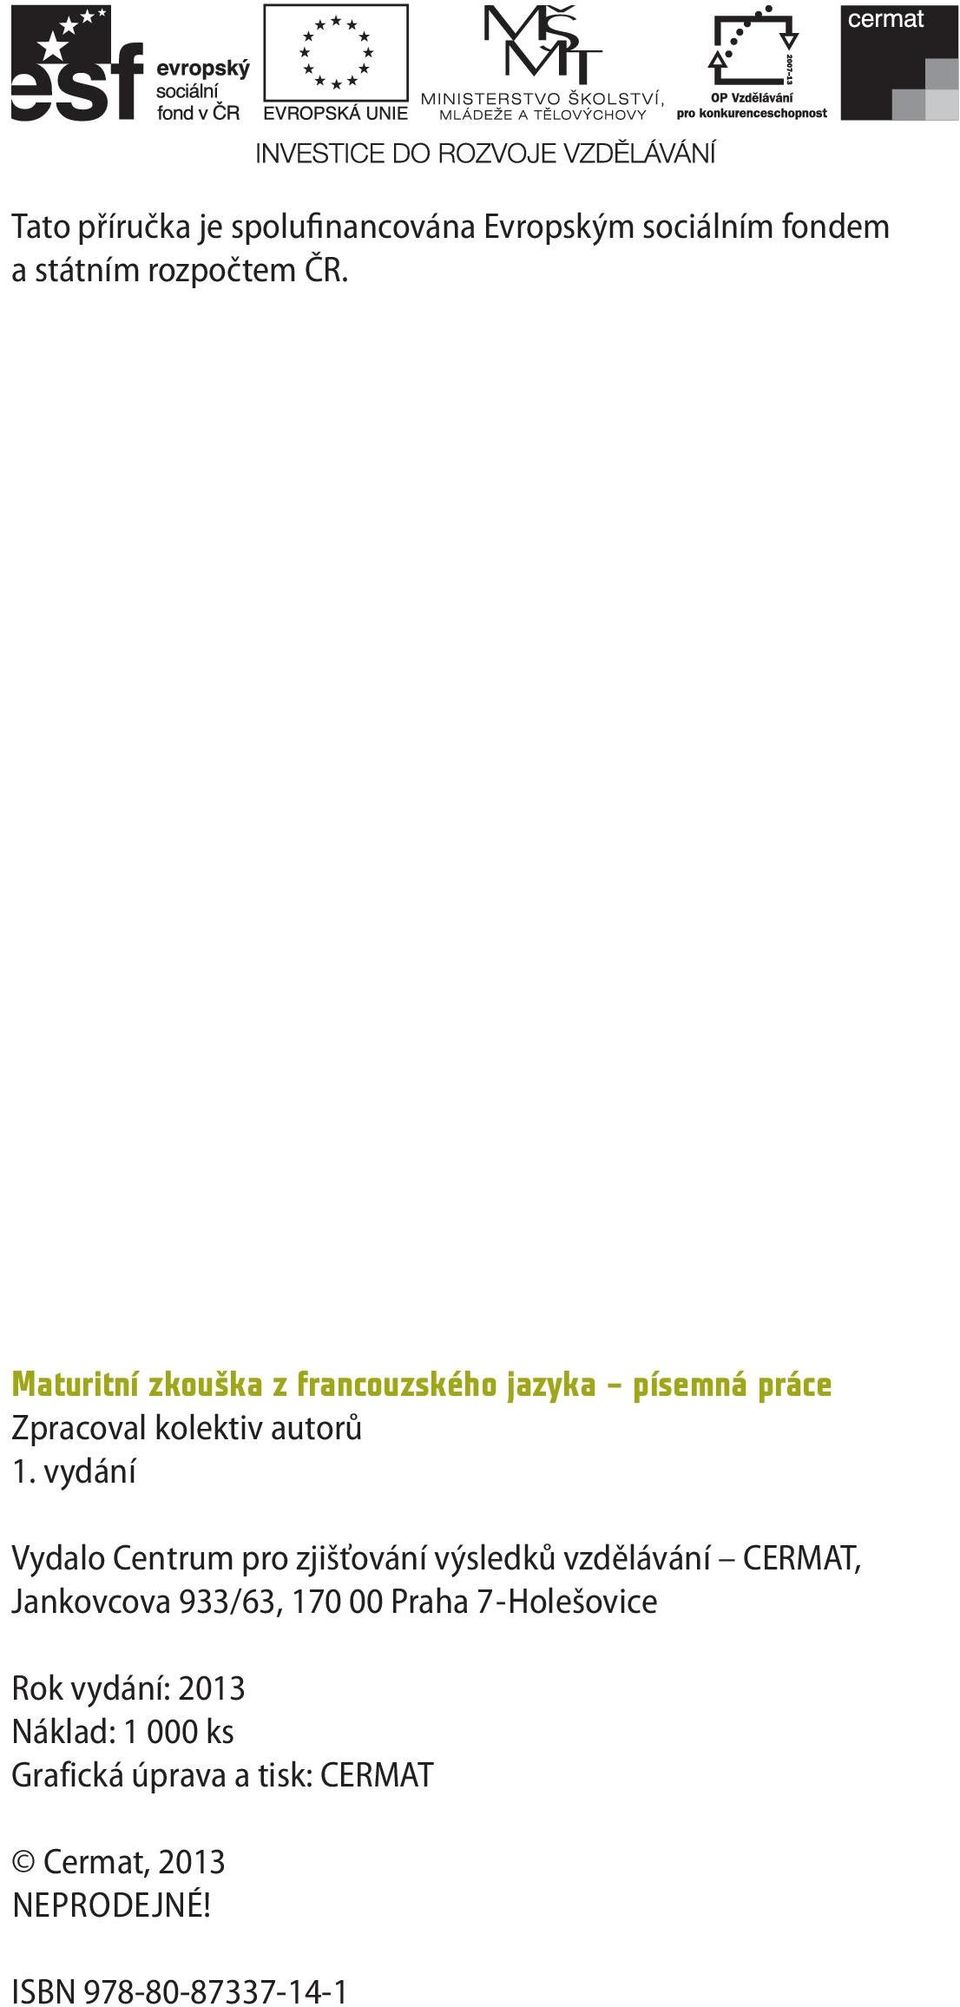 vydání Vydalo Centrum pro zjišťování výsledků vzdělávání CERMAT, Jankovcova 933/63, 170 00 Praha 7